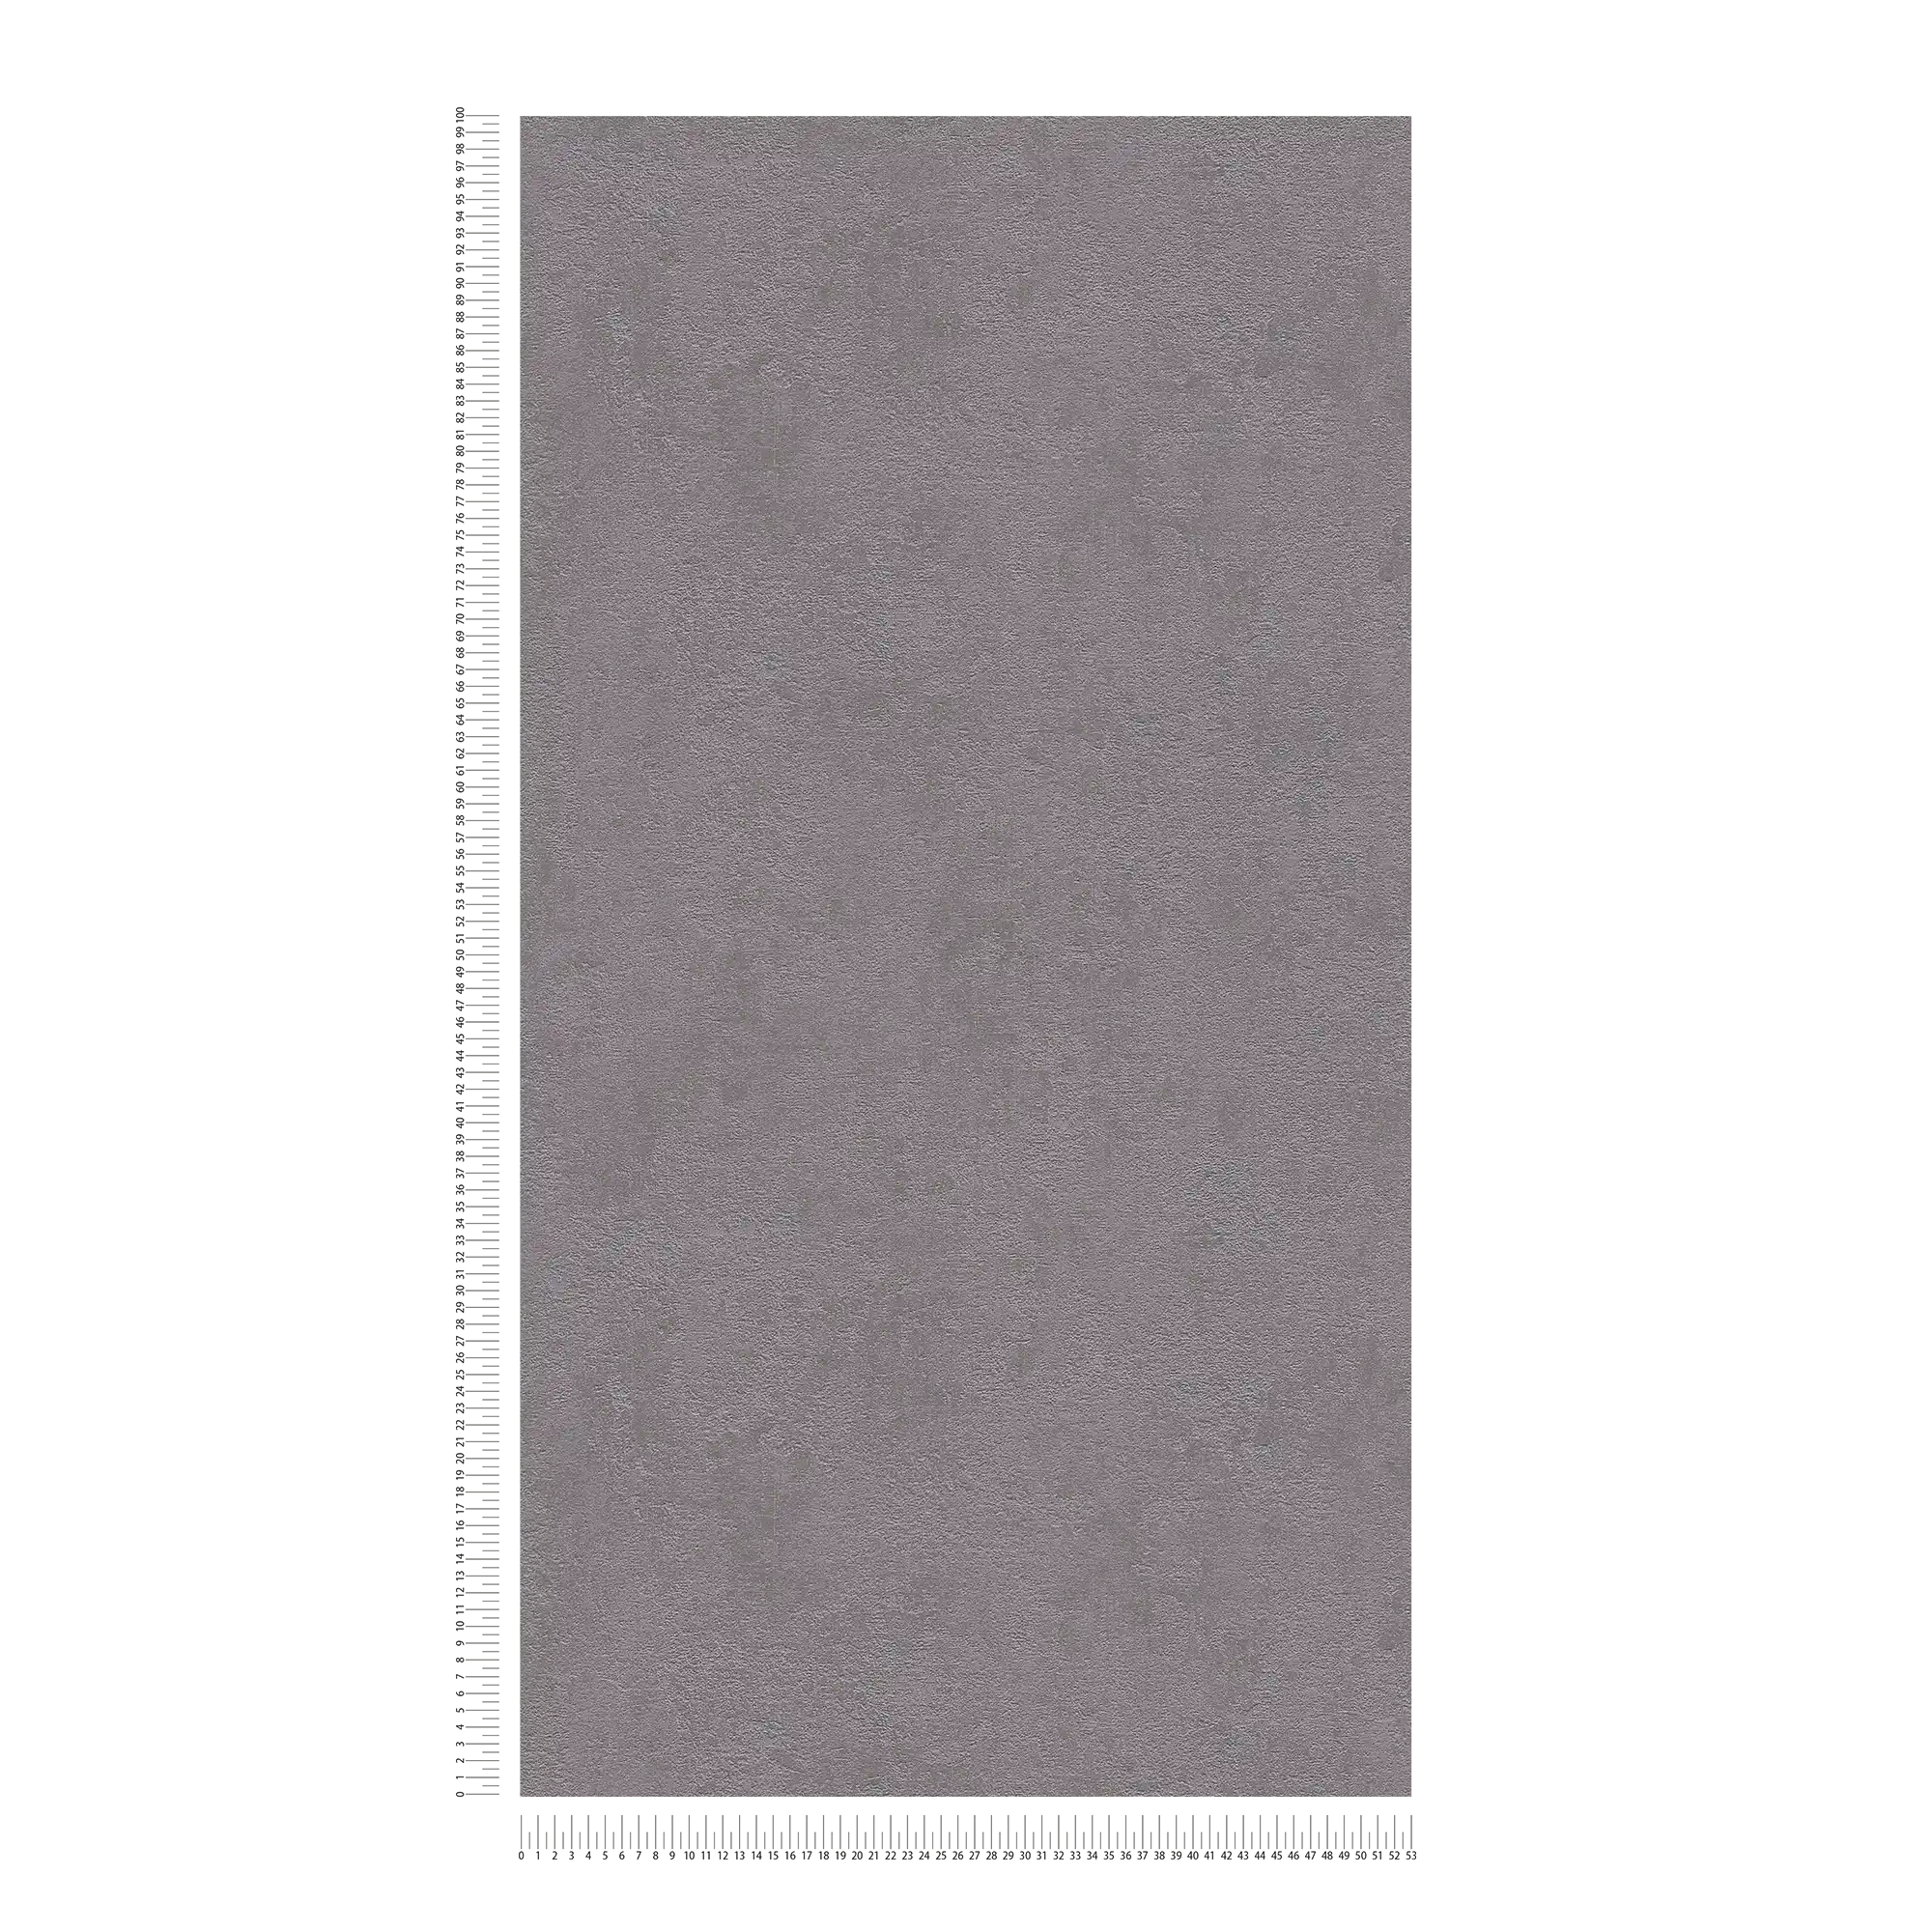             Carta da parati struttura in gesso, liscia e satinata - grigio scuro
        